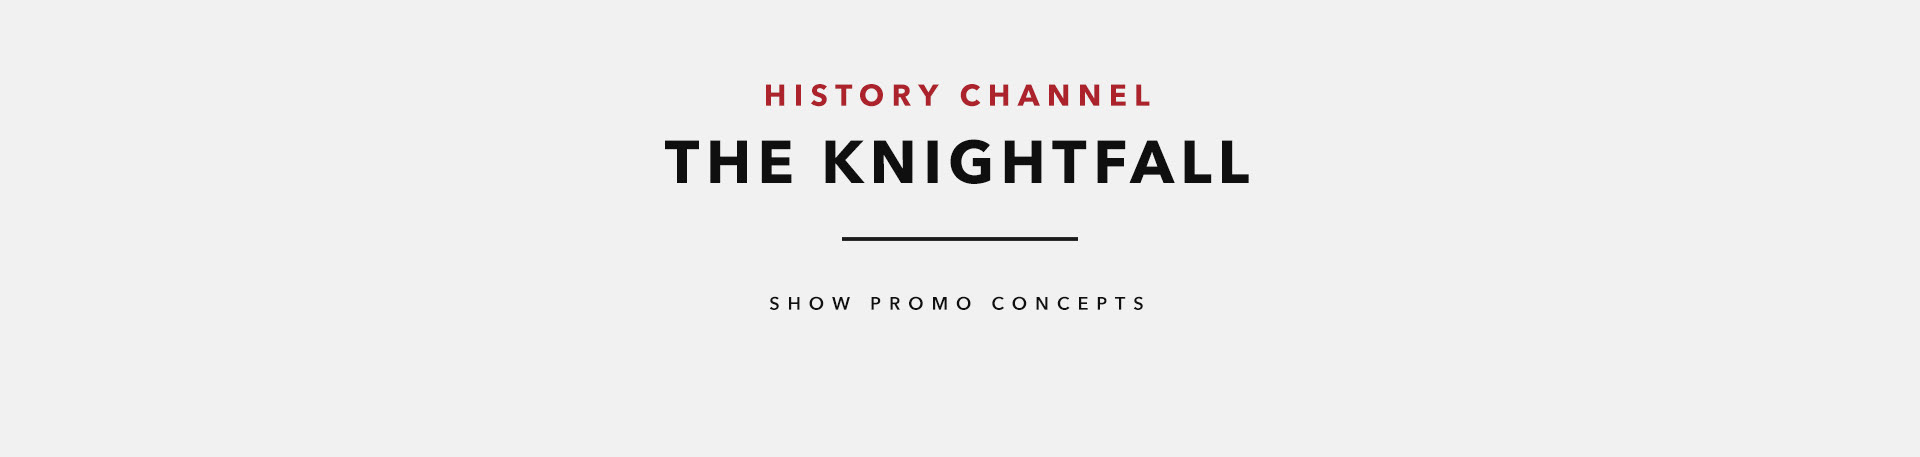 The Knightfall | History Channel on Behancef5f6c464839693.5b6dfbb53cdf3.jpg